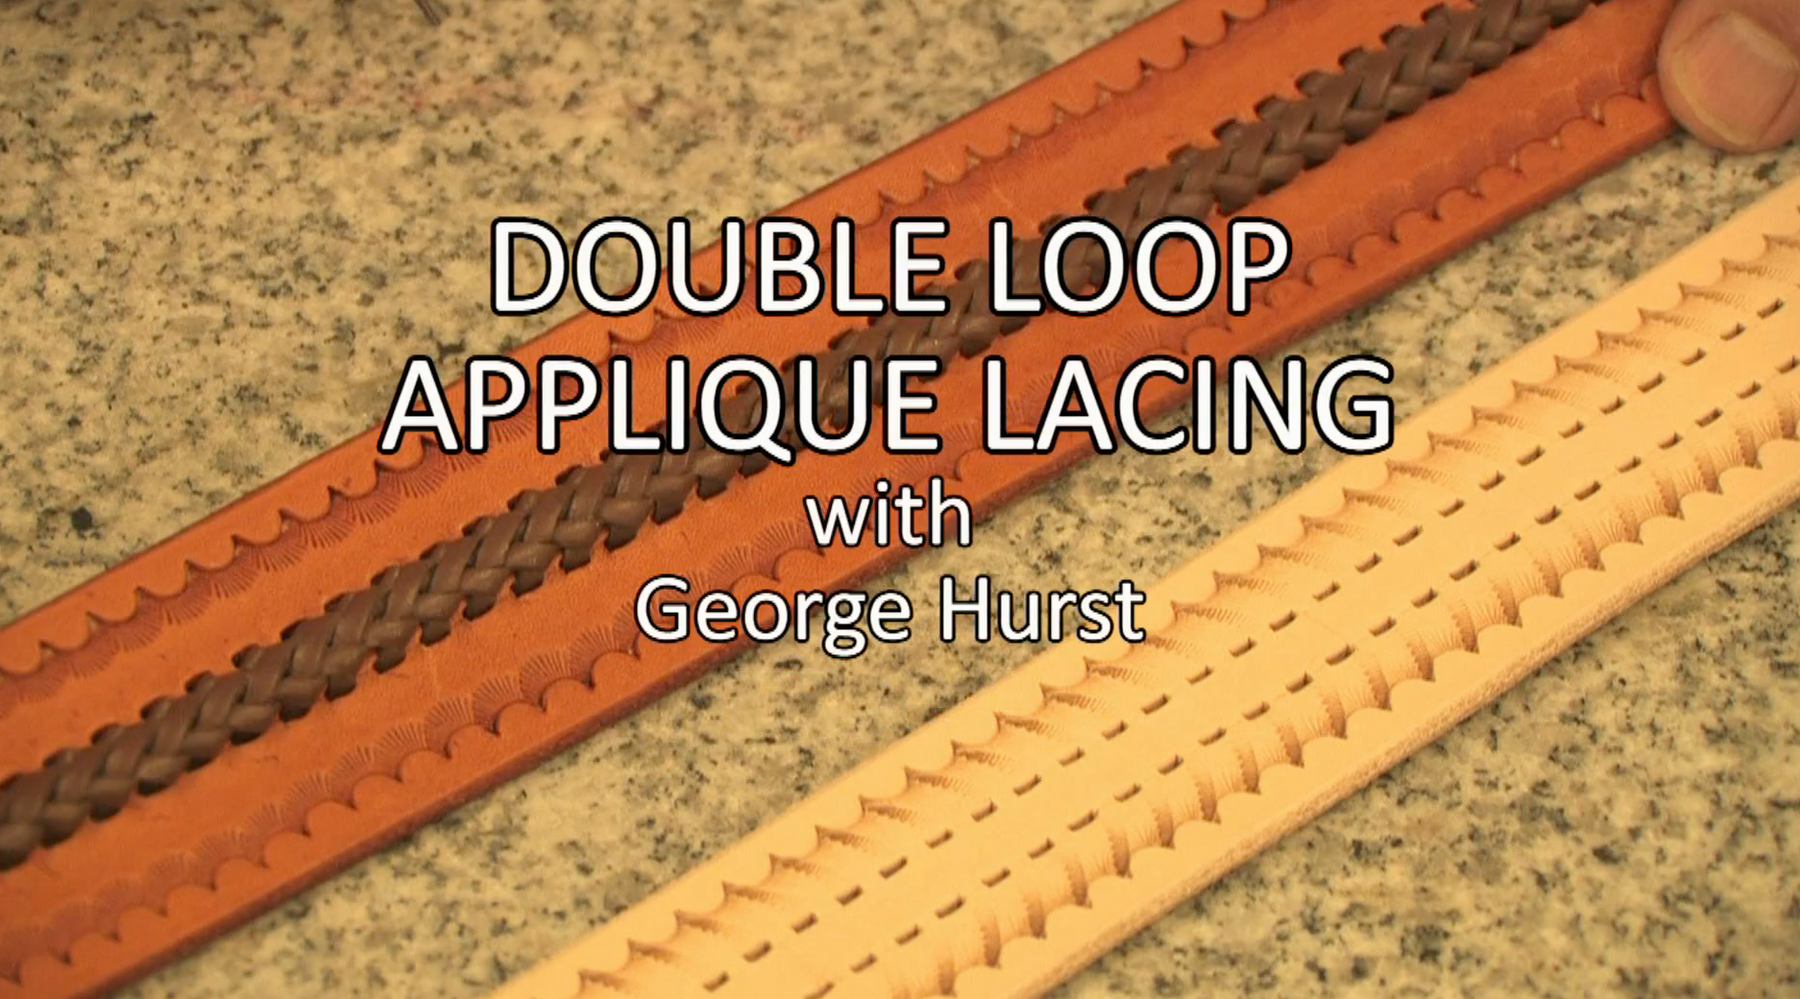 Double Loop Appliqué Lacing